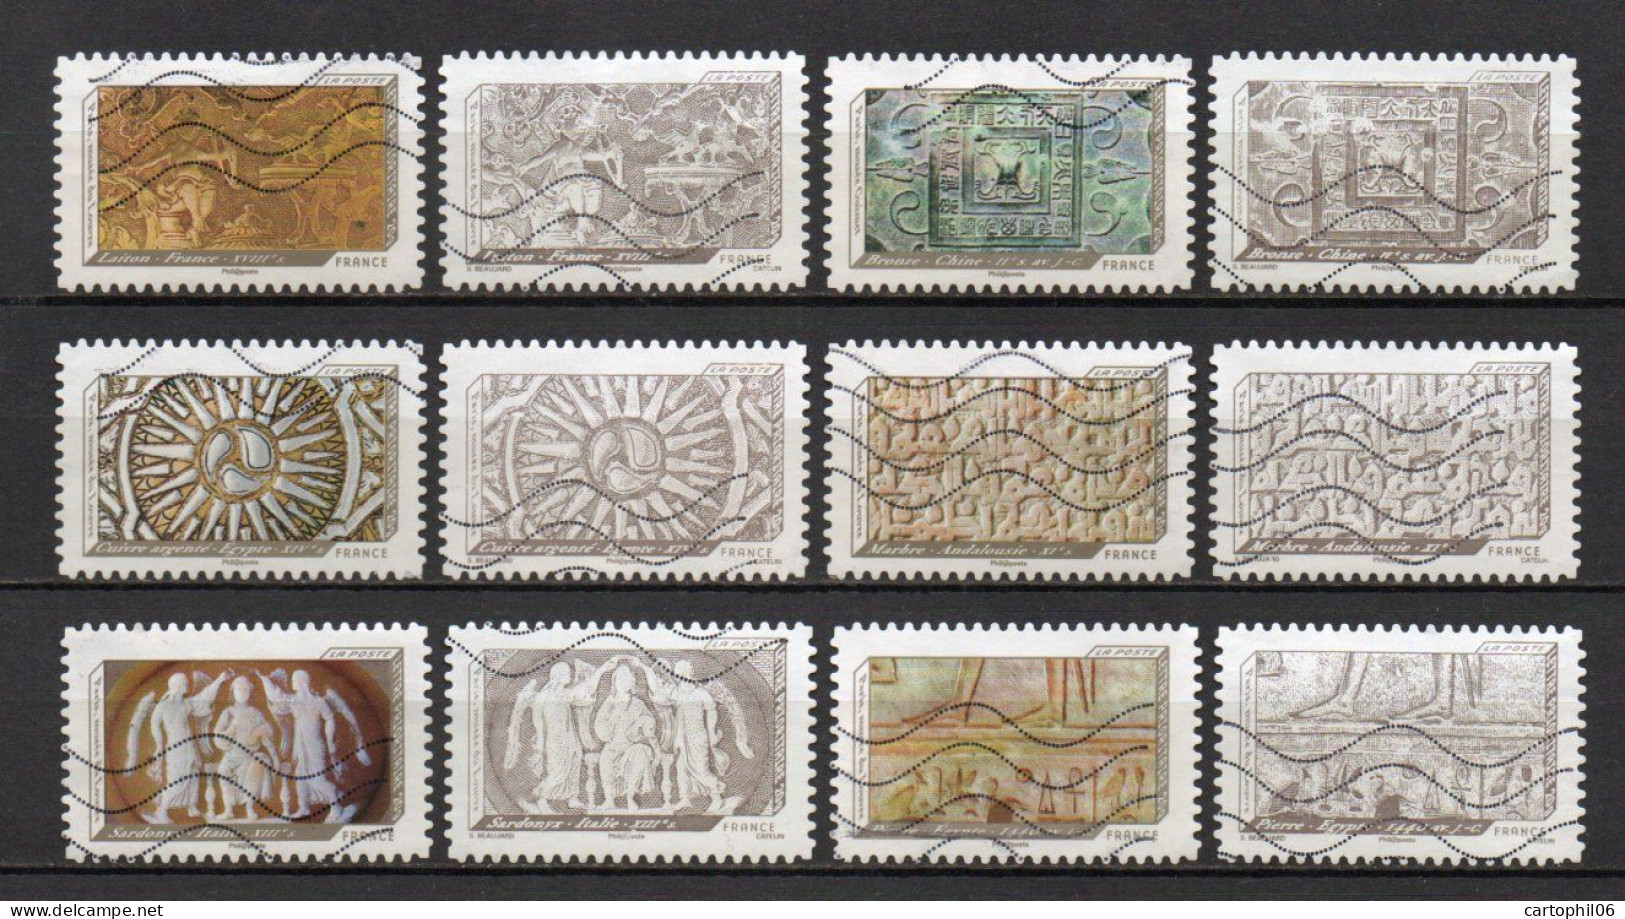 - FRANCE Adhésifs N° 650/61 Oblitérés - Série Complète IMPRESSIONS DE RELIEF 2012 (12 Timbres) - - Used Stamps